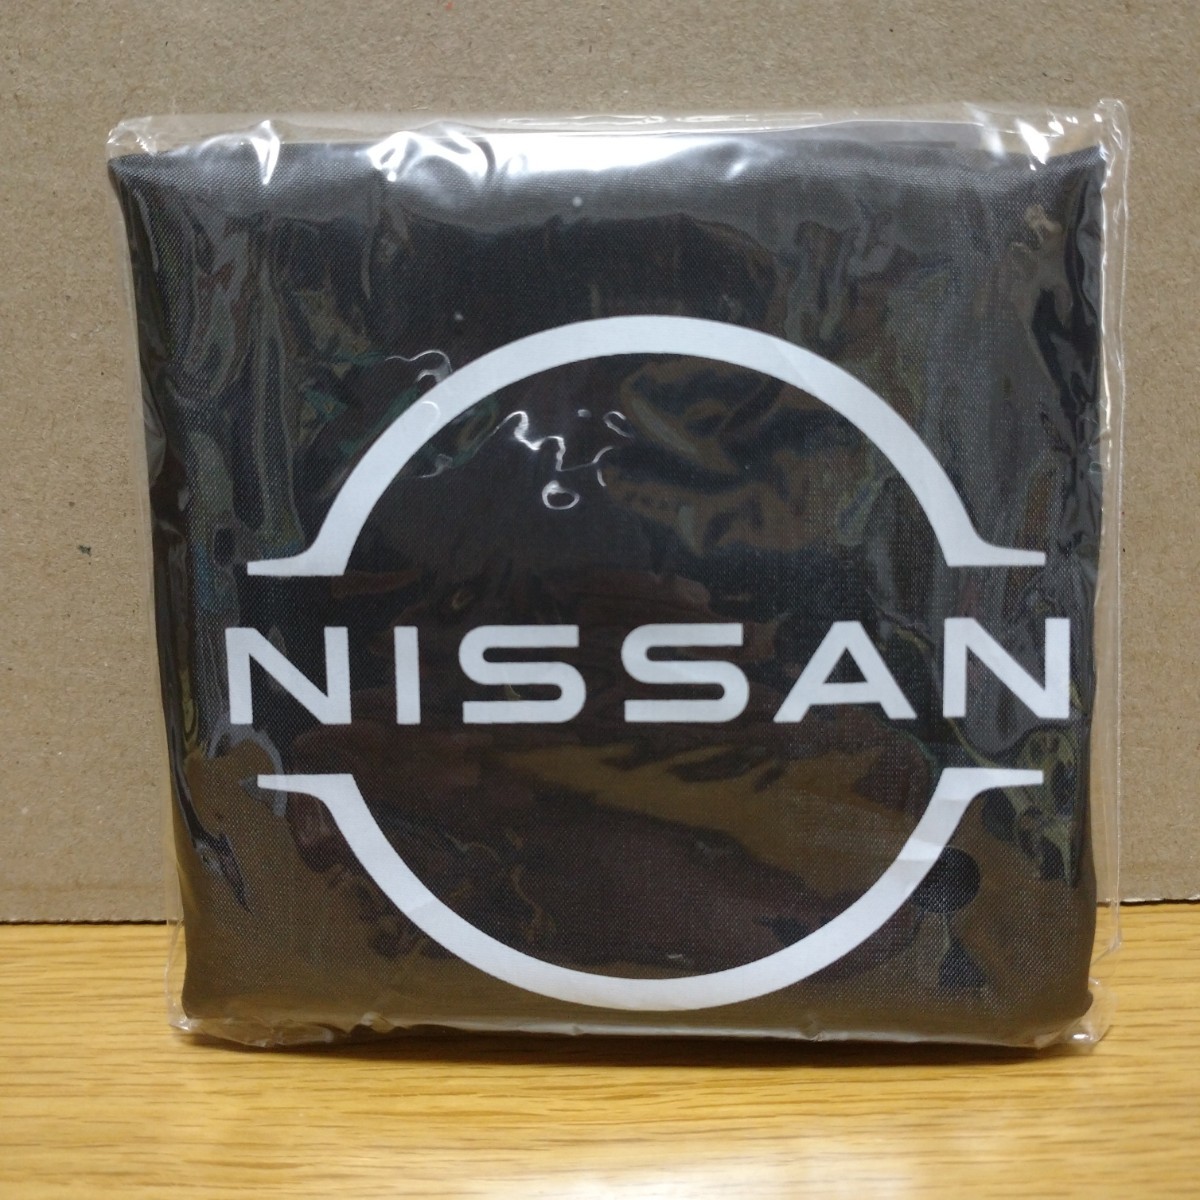 NISSAN не продается эко-сумка compact место хранения сумка Logo машина Nissan новые товары коллекция ограничение car limited collection bag ②